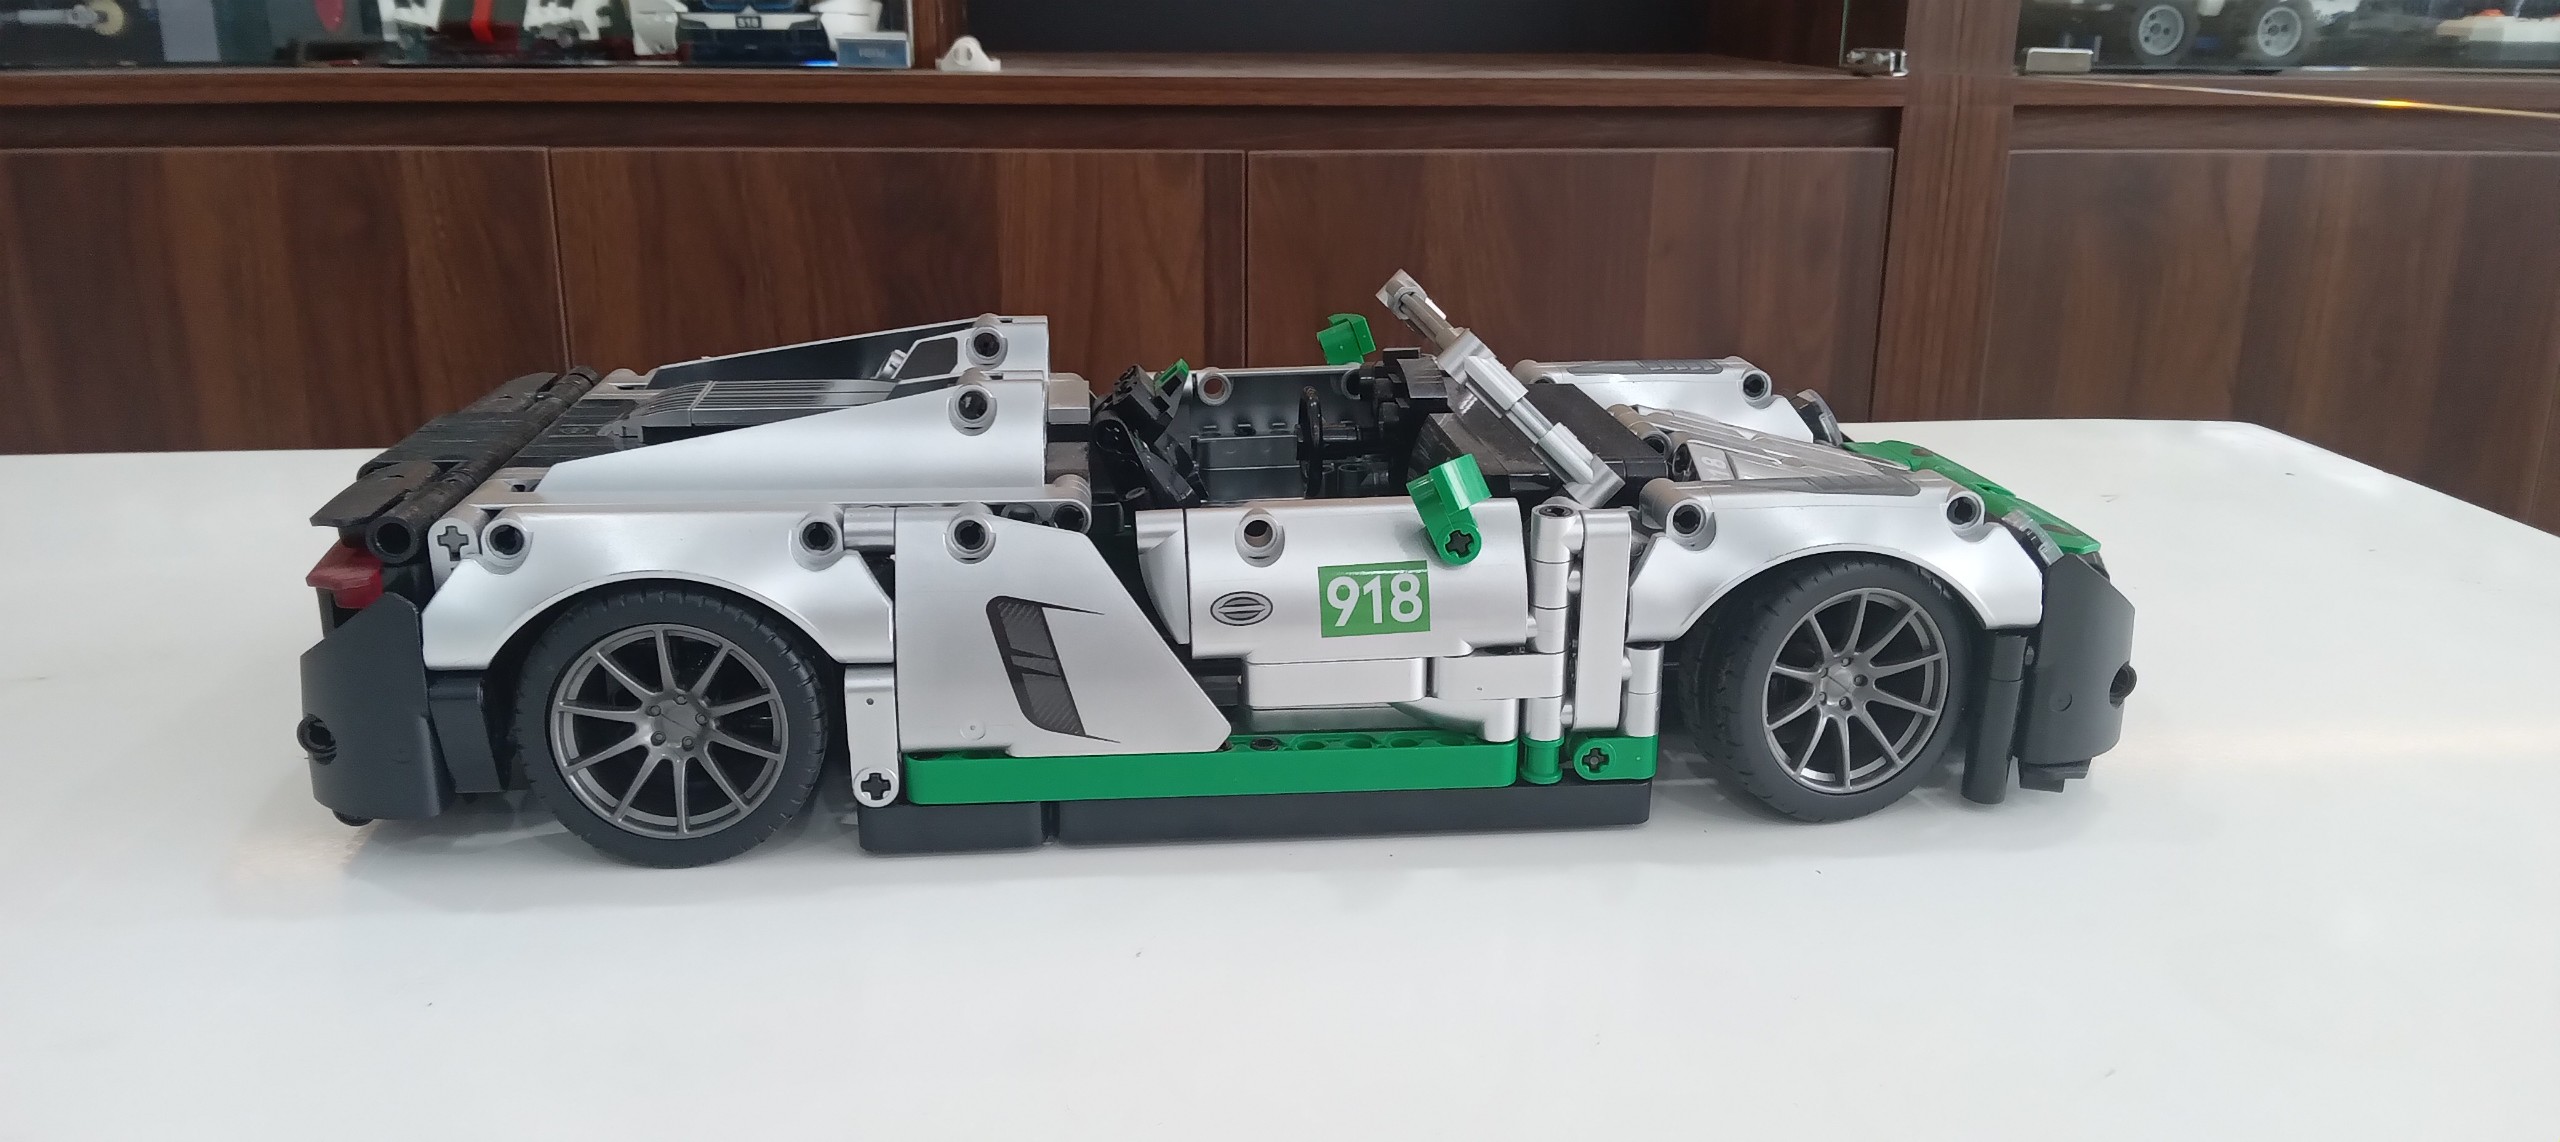 Bộ đồ chơi lắp ghép, xếp hình Siêu xe Porsche 918 - SY BLOCK SY8610 ( có 2 bản)